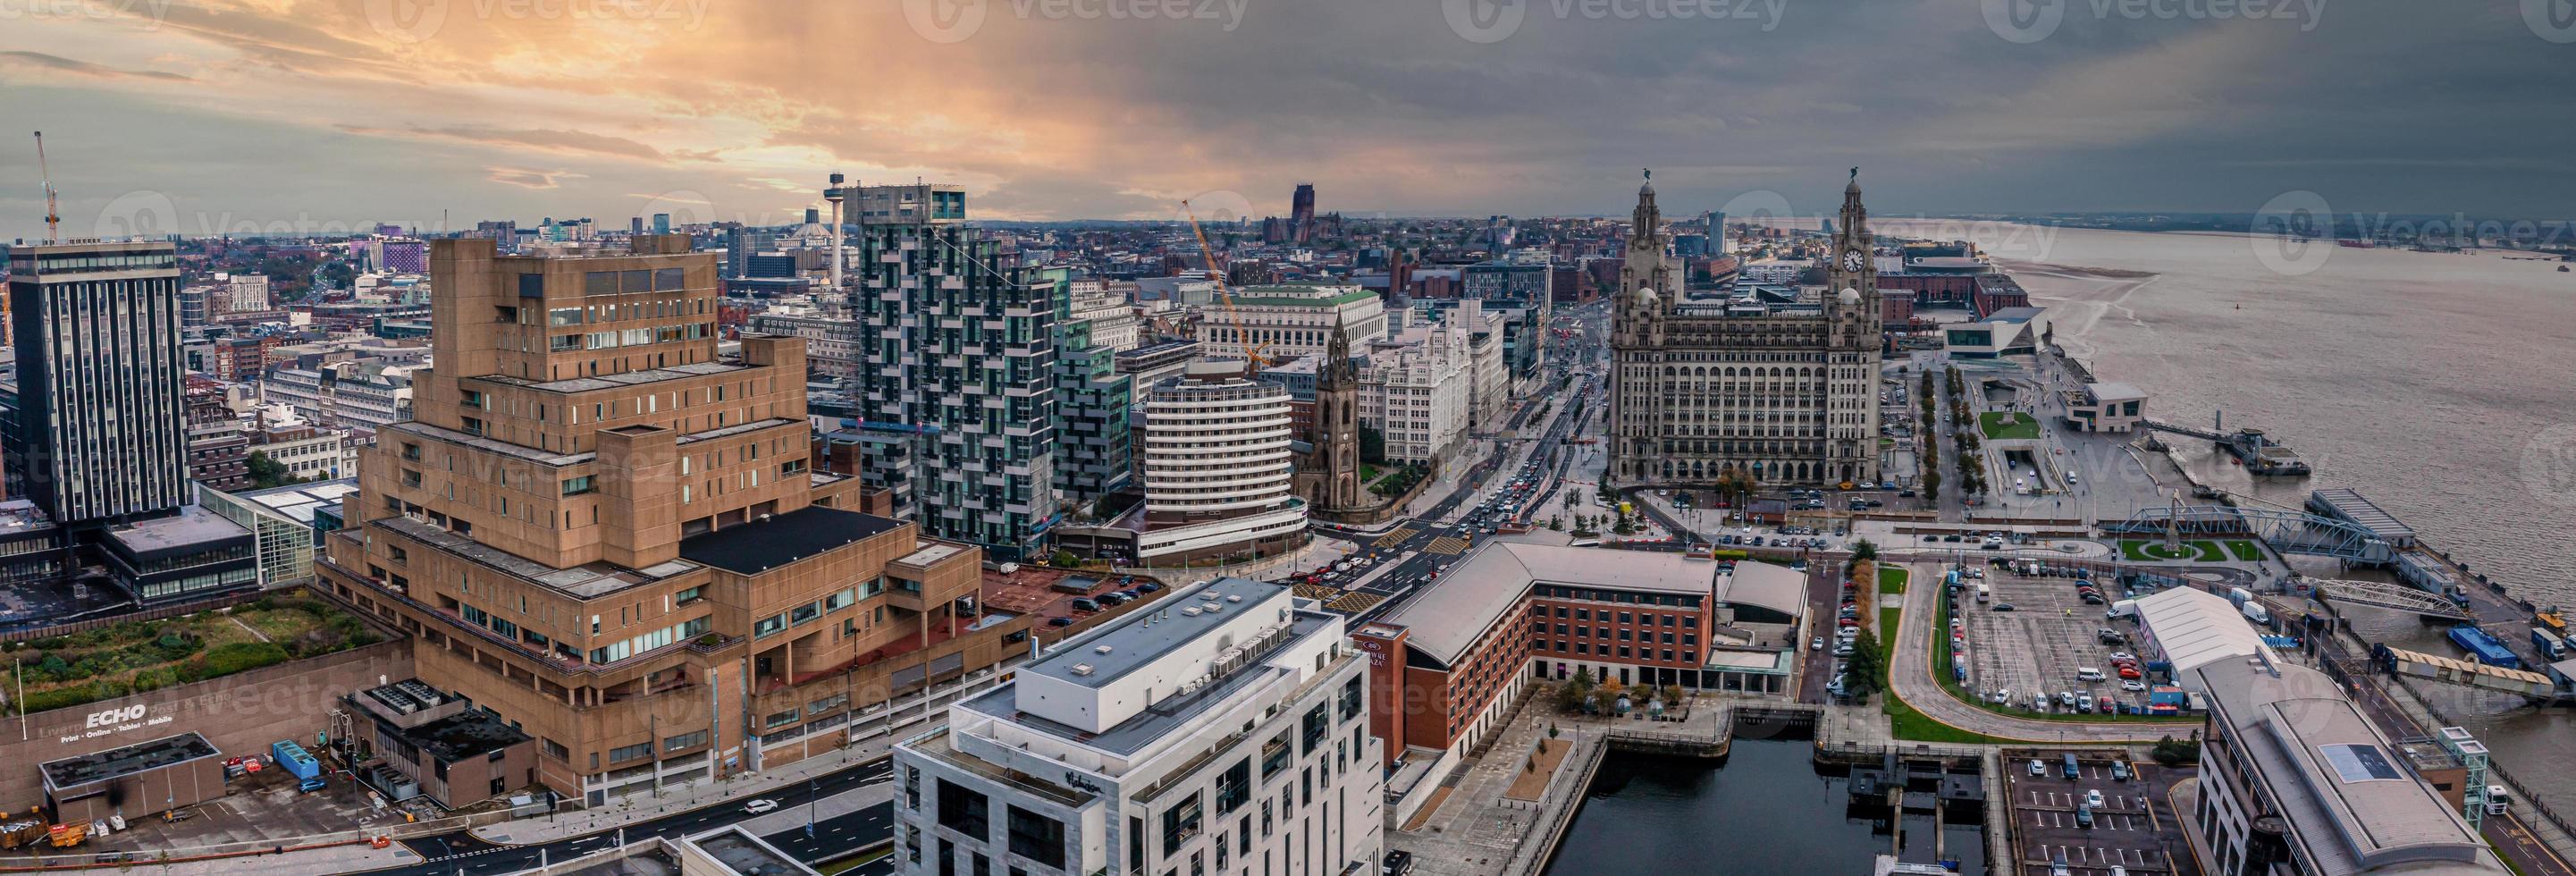 vista aérea do horizonte de Liverpool no Reino Unido foto